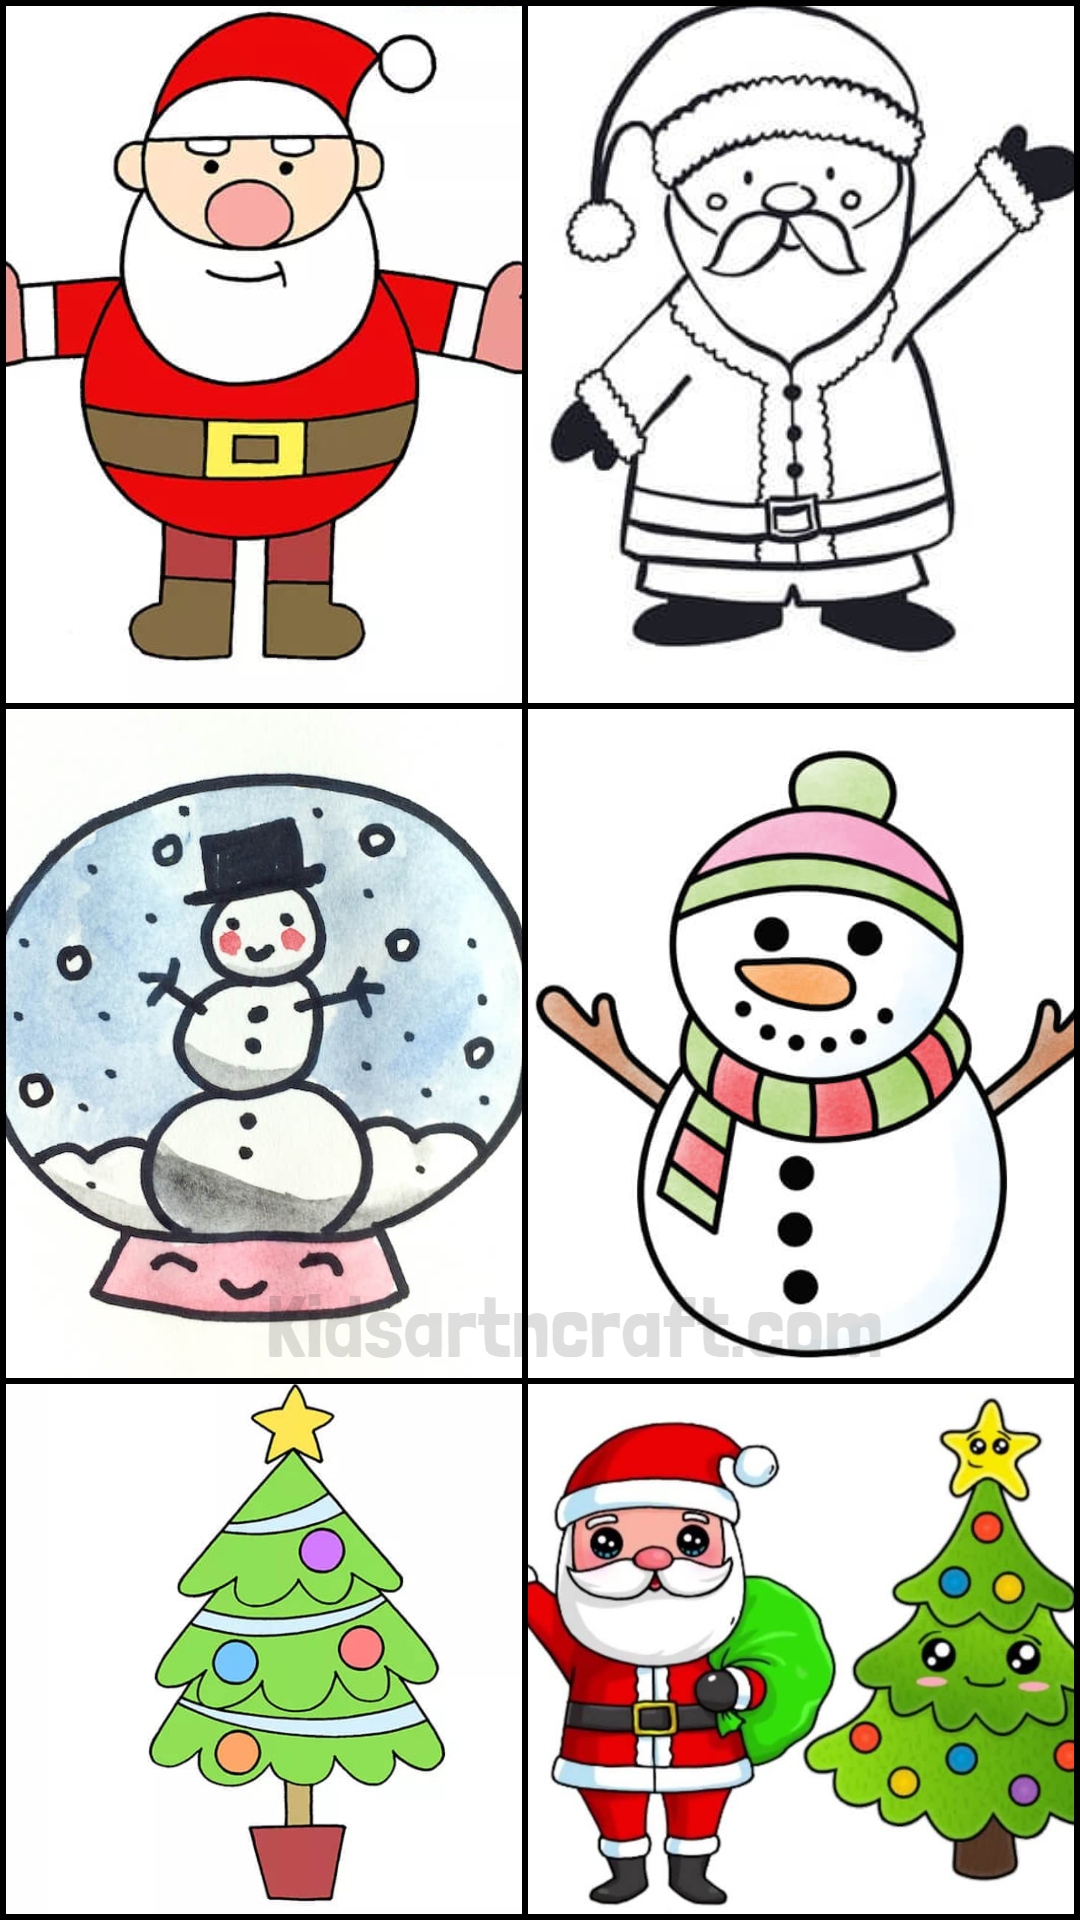 Christmas Drawings for Kids